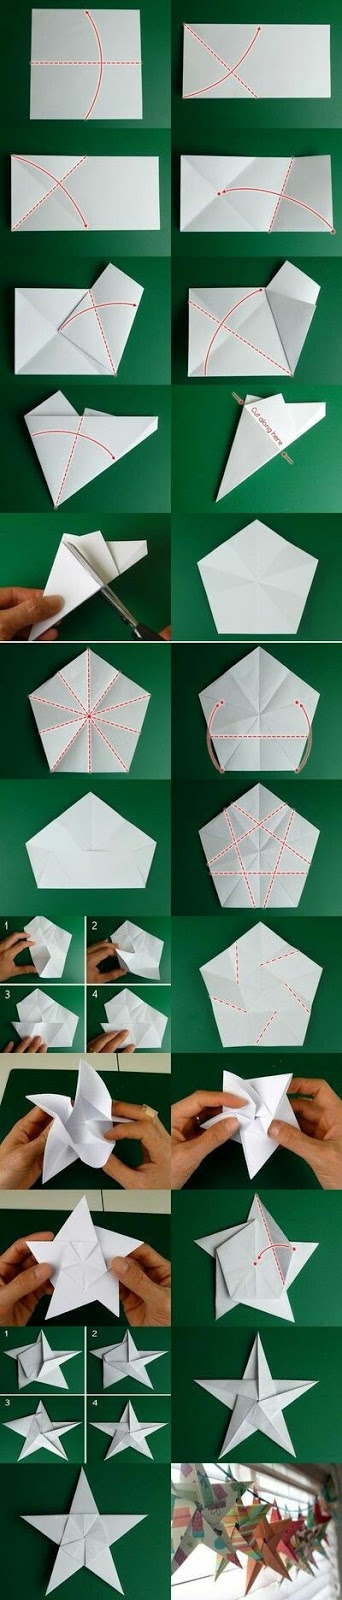 87 Gambar Origami Catur Paling Bagus